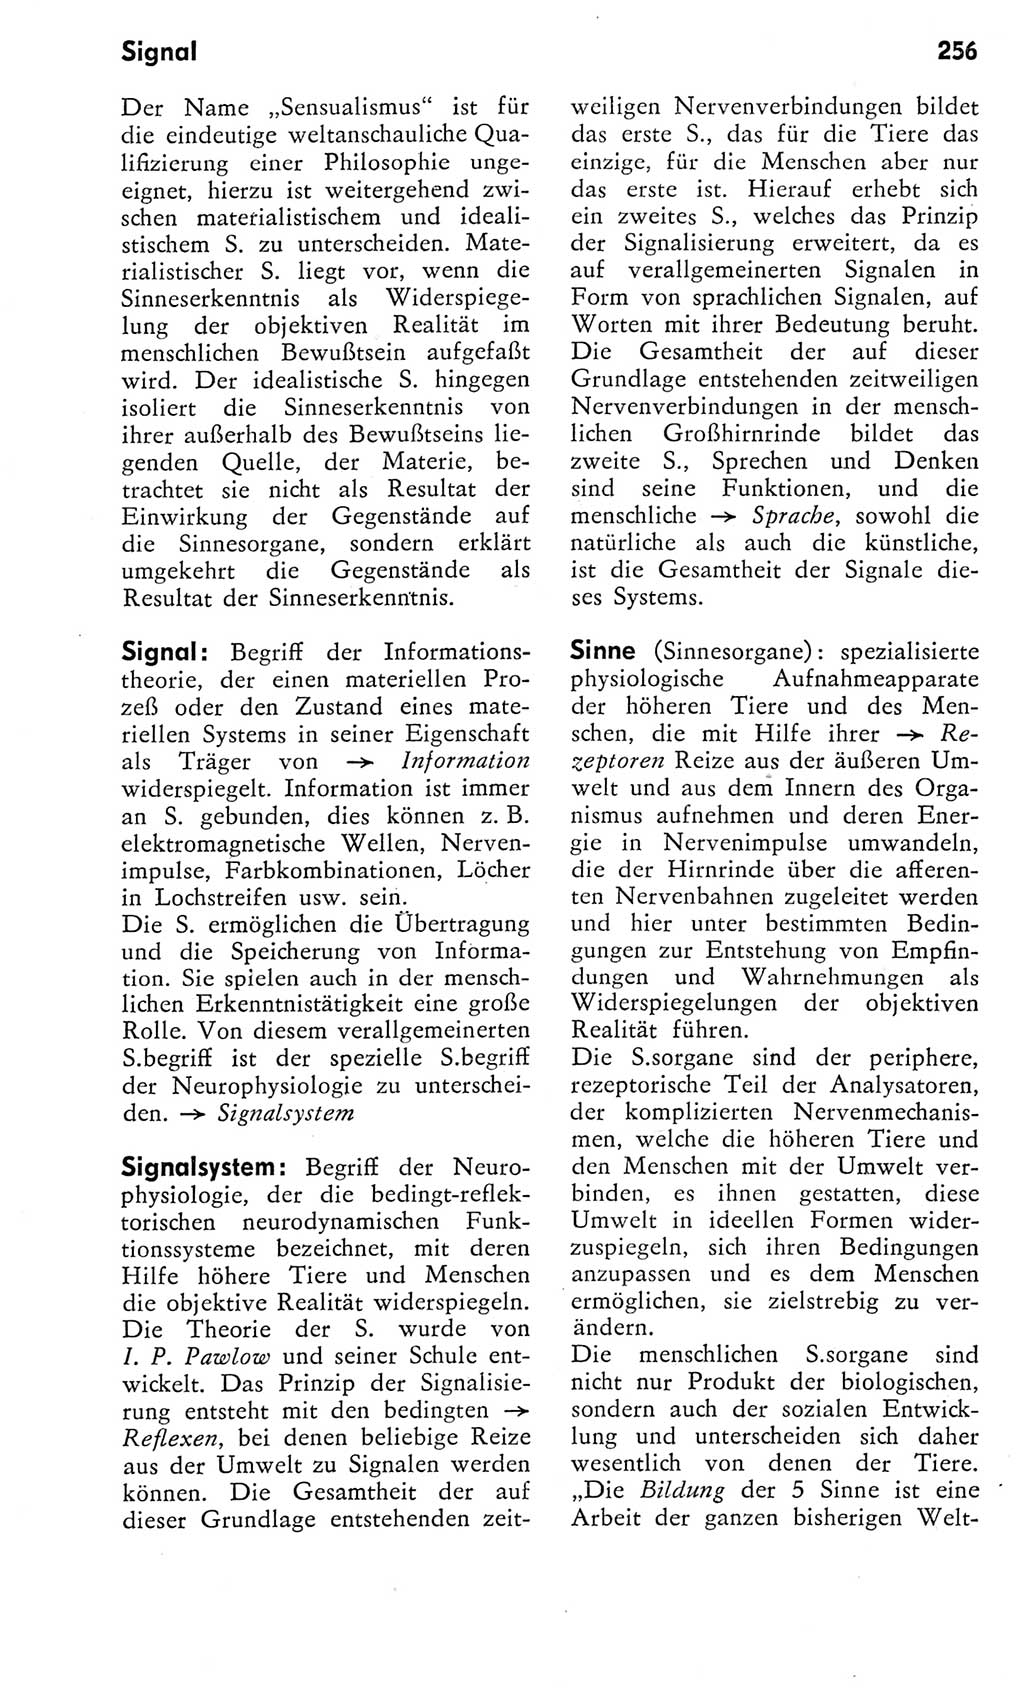 Kleines Wörterbuch der marxistisch-leninistischen Philosophie [Deutsche Demokratische Republik (DDR)] 1975, Seite 256 (Kl. Wb. ML Phil. DDR 1975, S. 256)